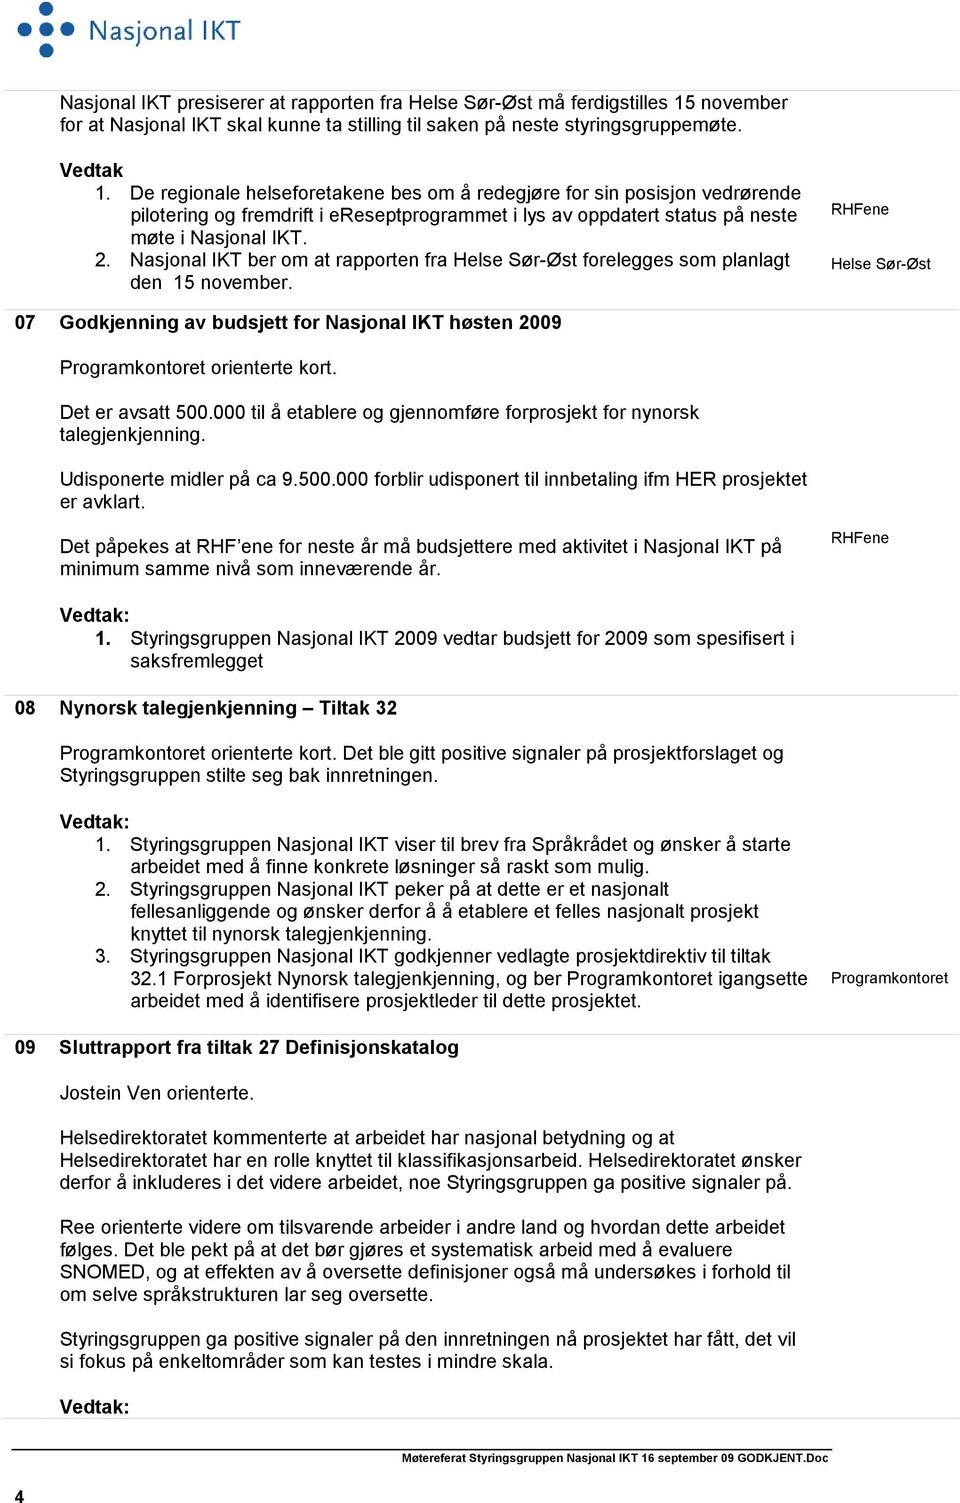 Nasjonal IKT ber om at rapporten fra Helse Sør-Øst forelegges som planlagt den 15 november. RHFene Helse Sør-Øst 07 Godkjenning av budsjett for Nasjonal IKT høsten 2009 orienterte kort.